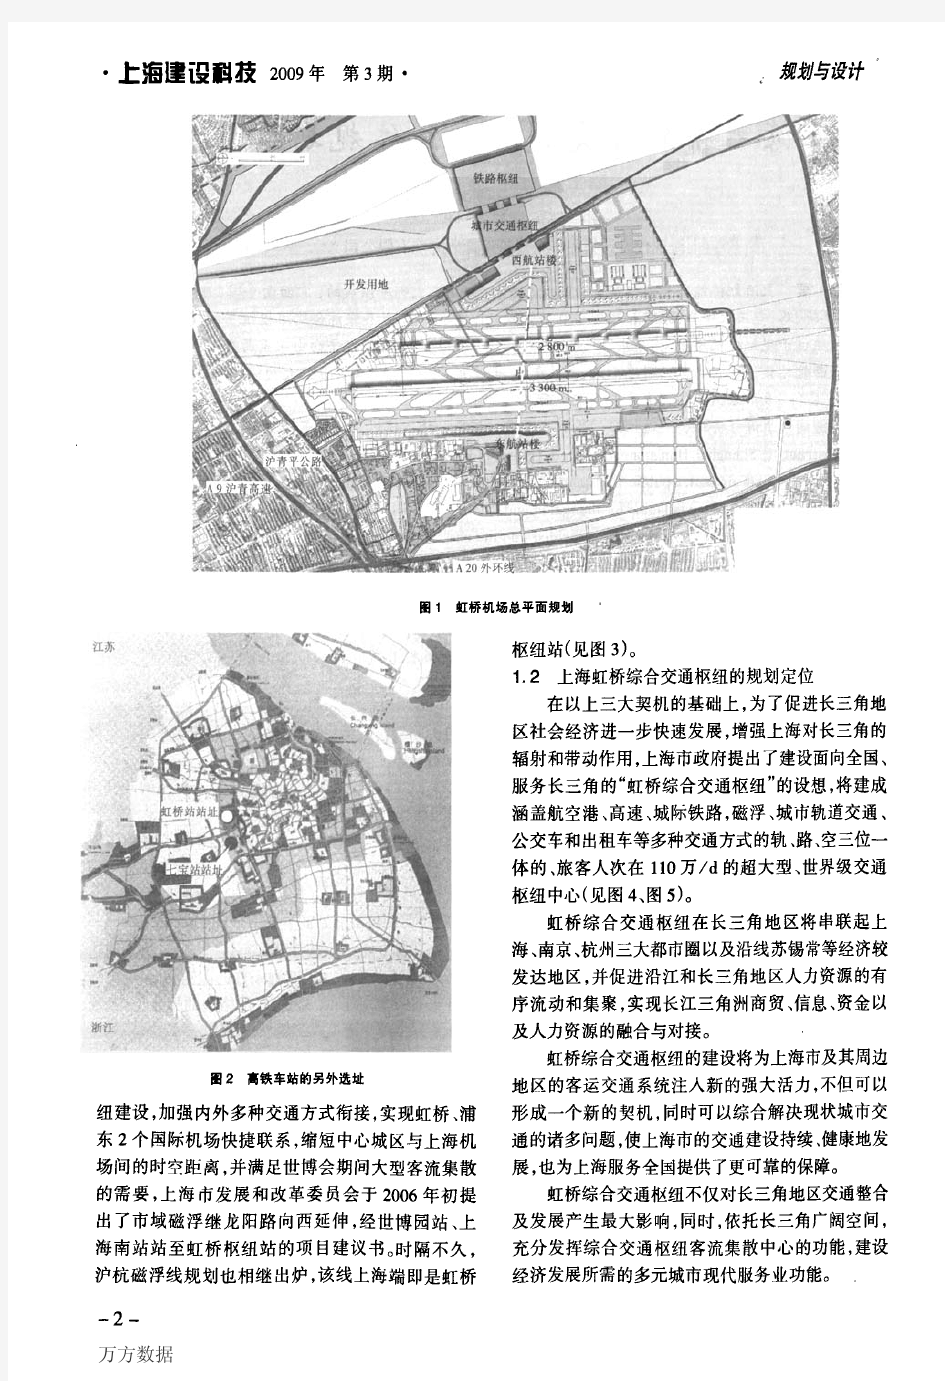 上海虹桥综合交通枢纽总体规划设计